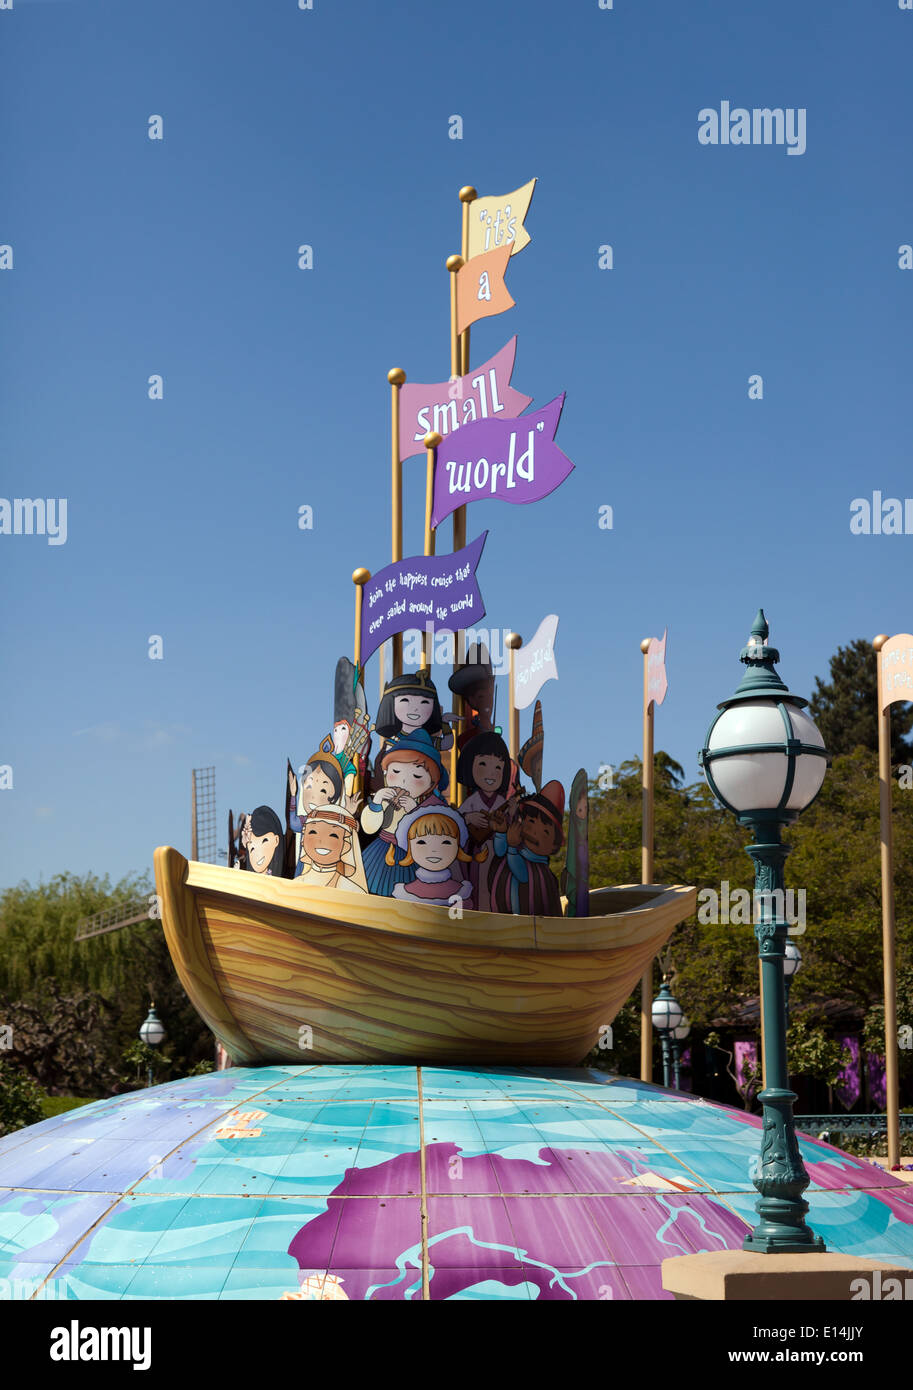 C'est un petit monde, un bateau situé dans la région de Fantasyland , Disneyland Paris. Banque D'Images